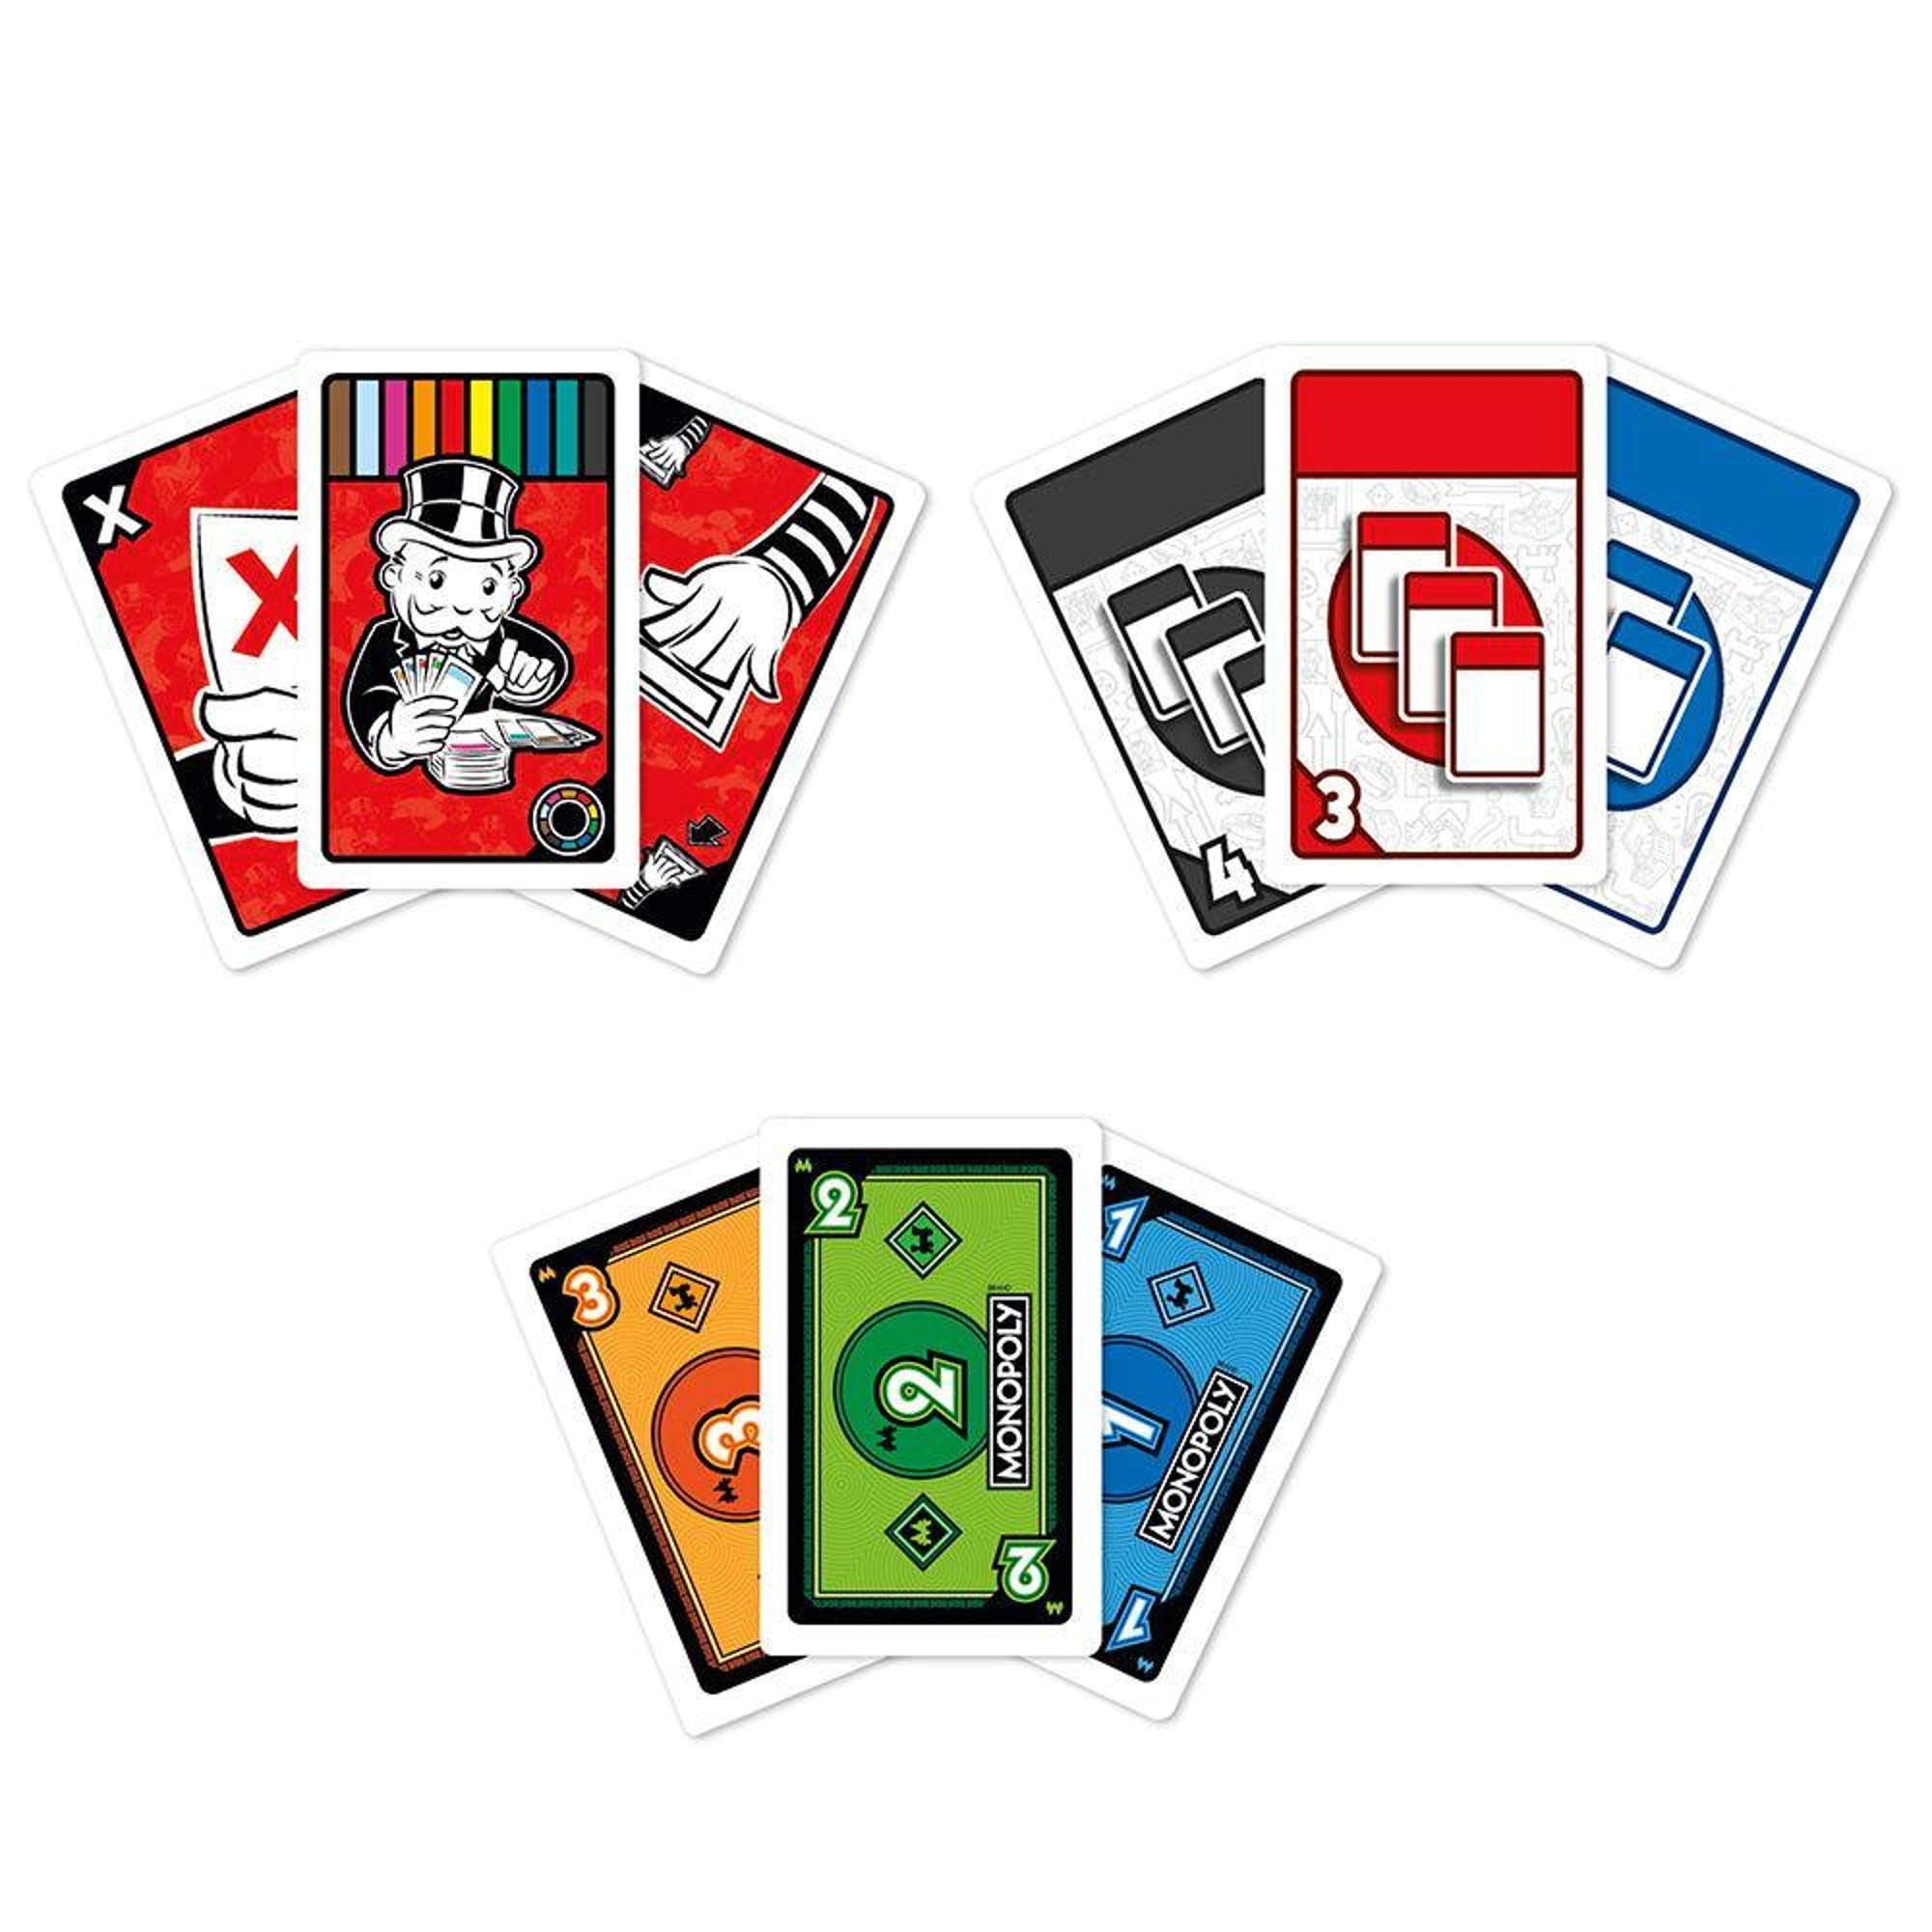 Monopoly, Jogos Português